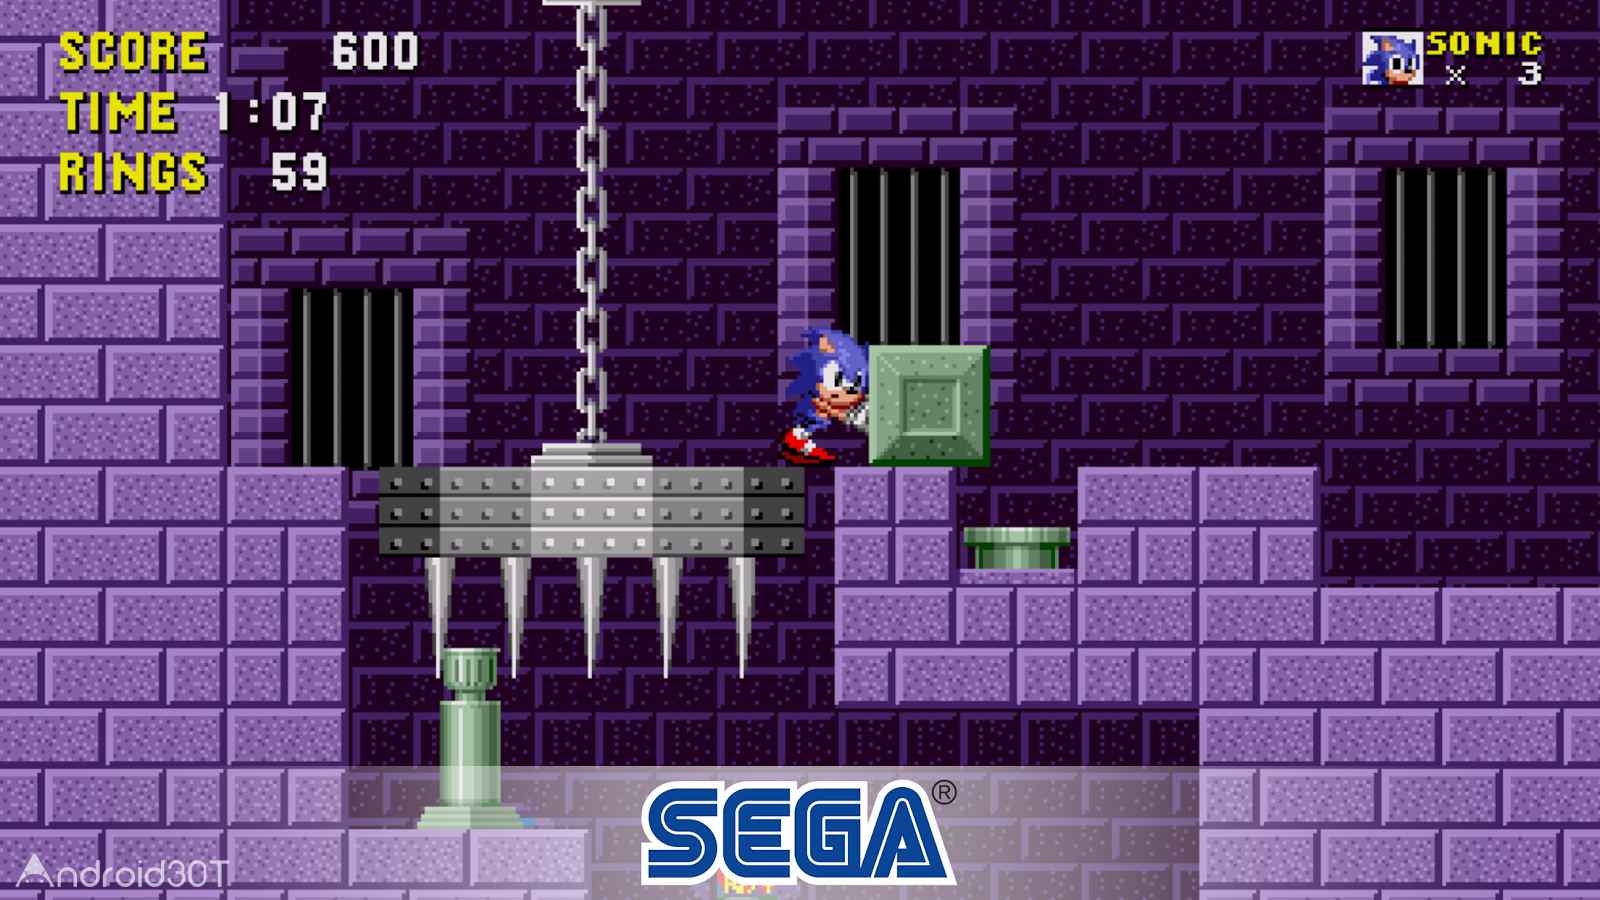 دانلود Sonic the Hedgehog 3.8.1 – بازی پرطرفدار سونیک اندروید